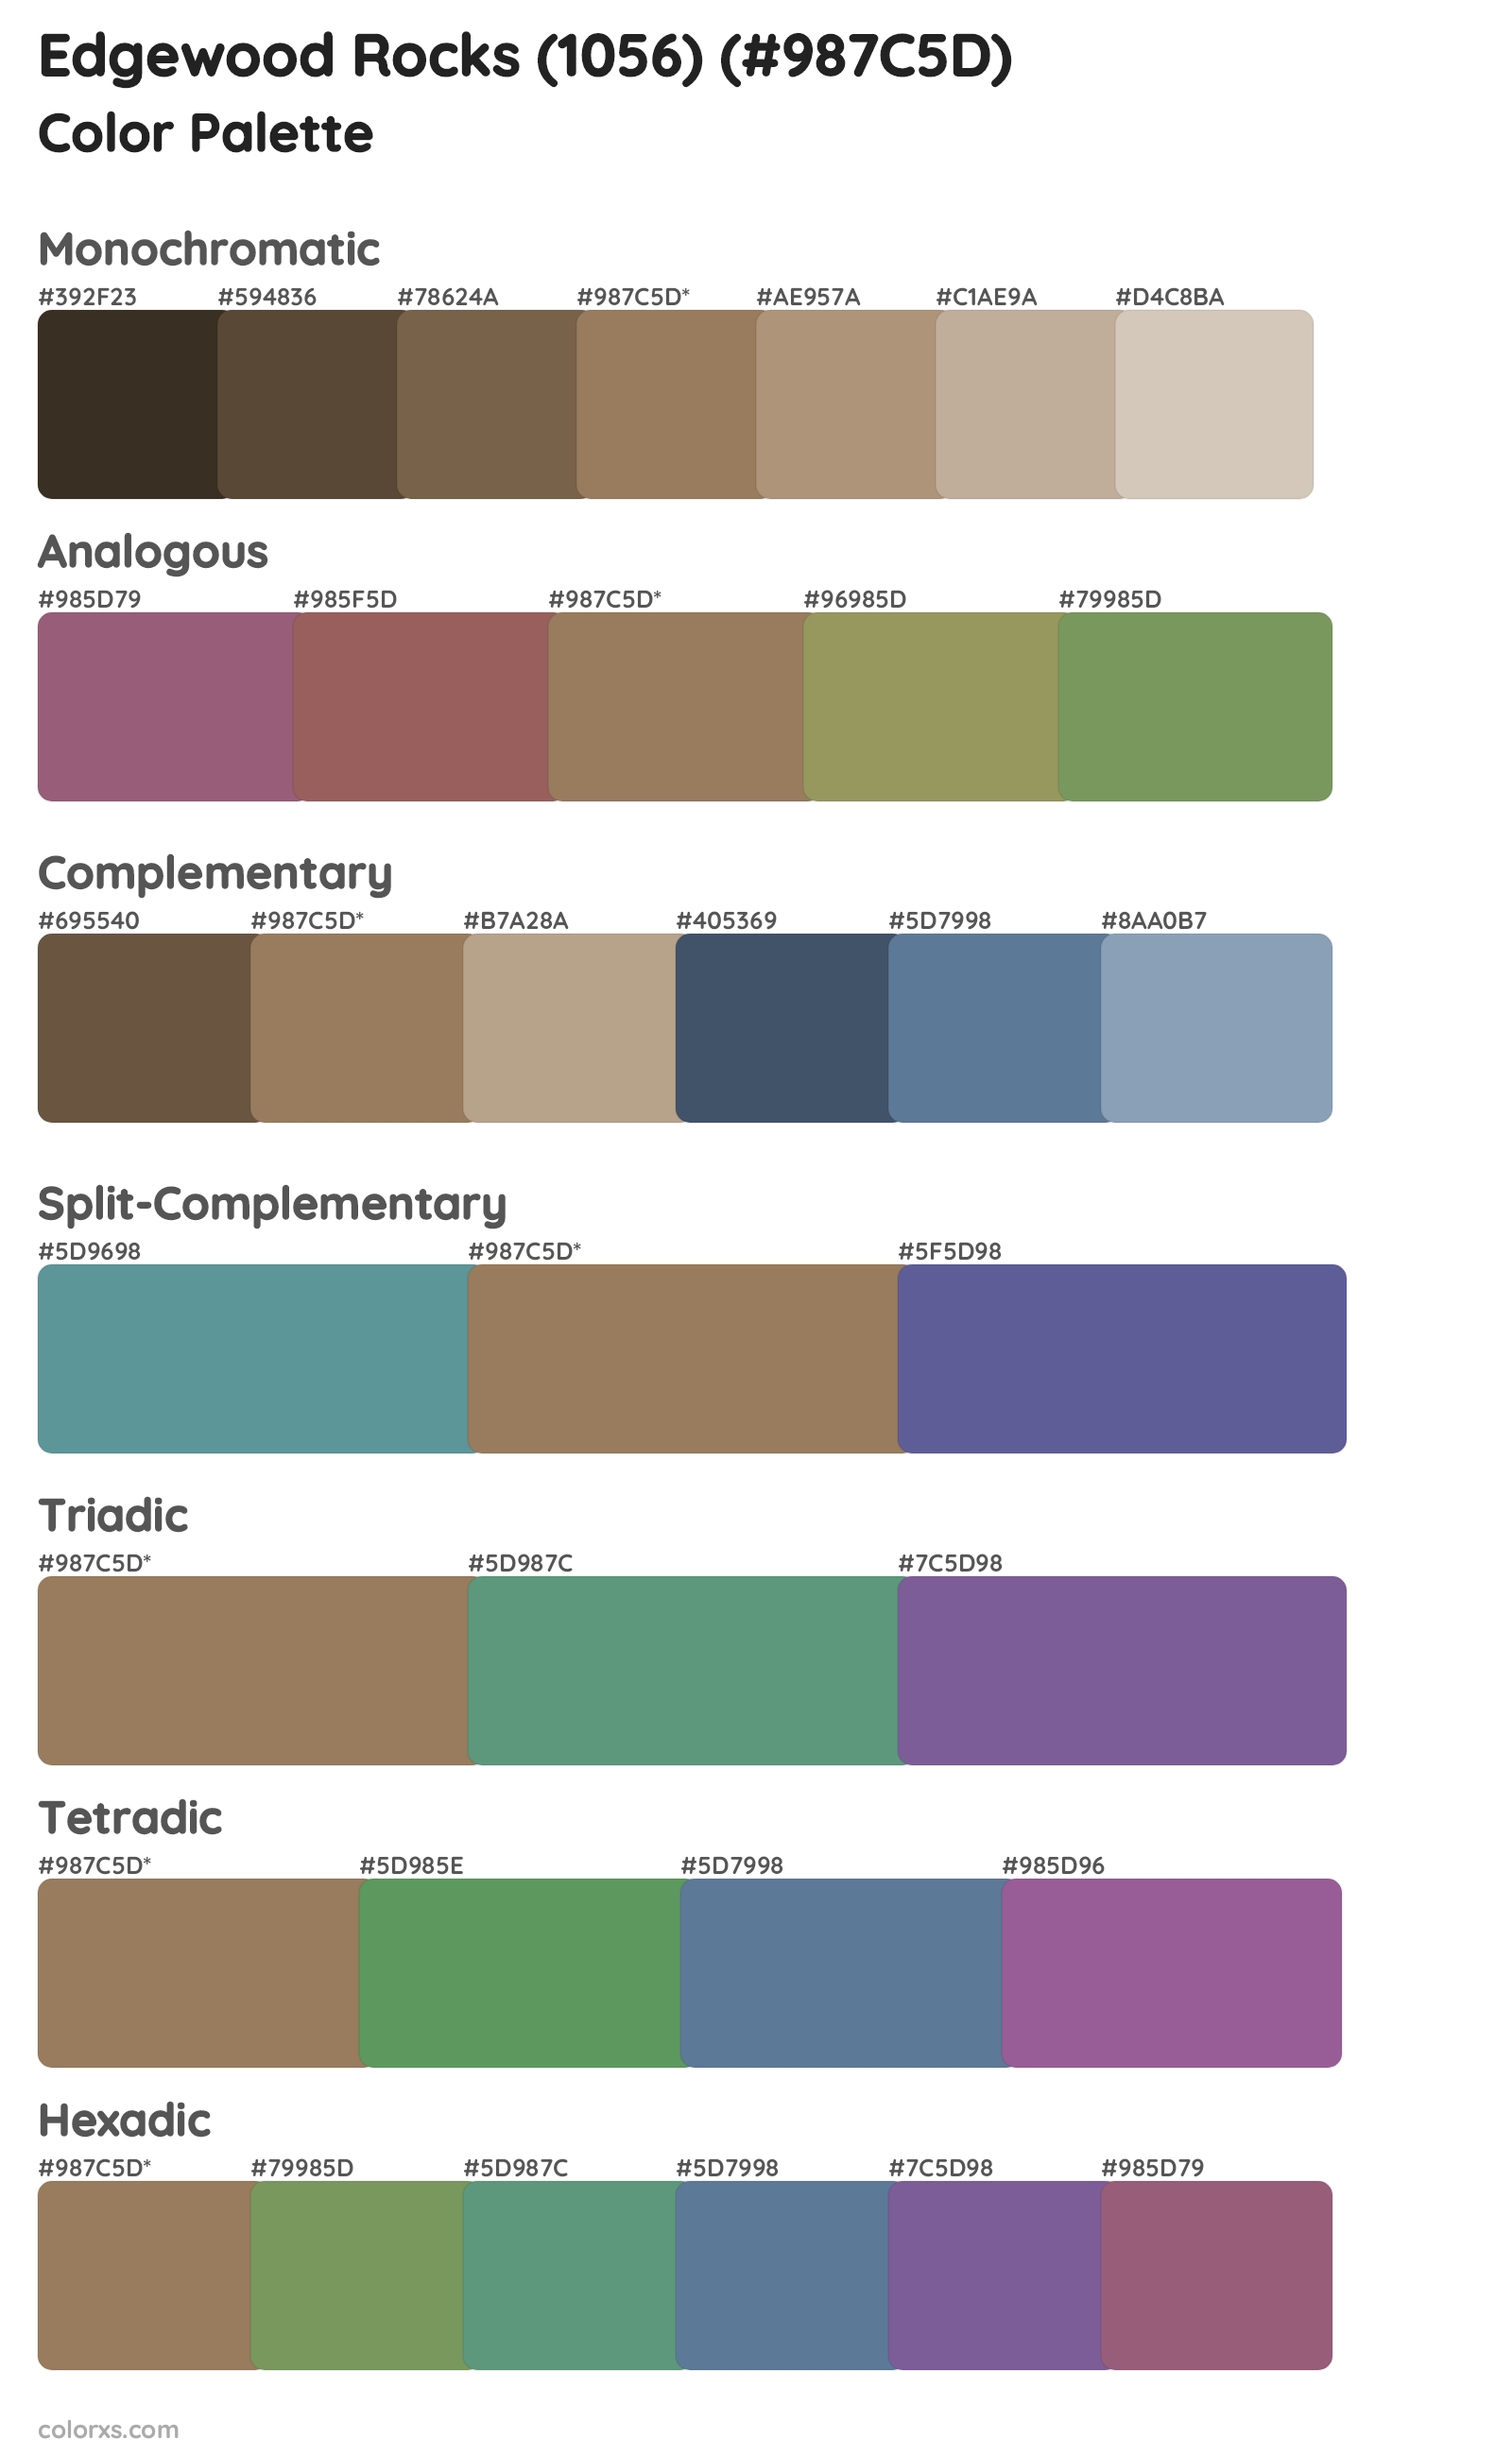 Edgewood Rocks (1056) Color Scheme Palettes